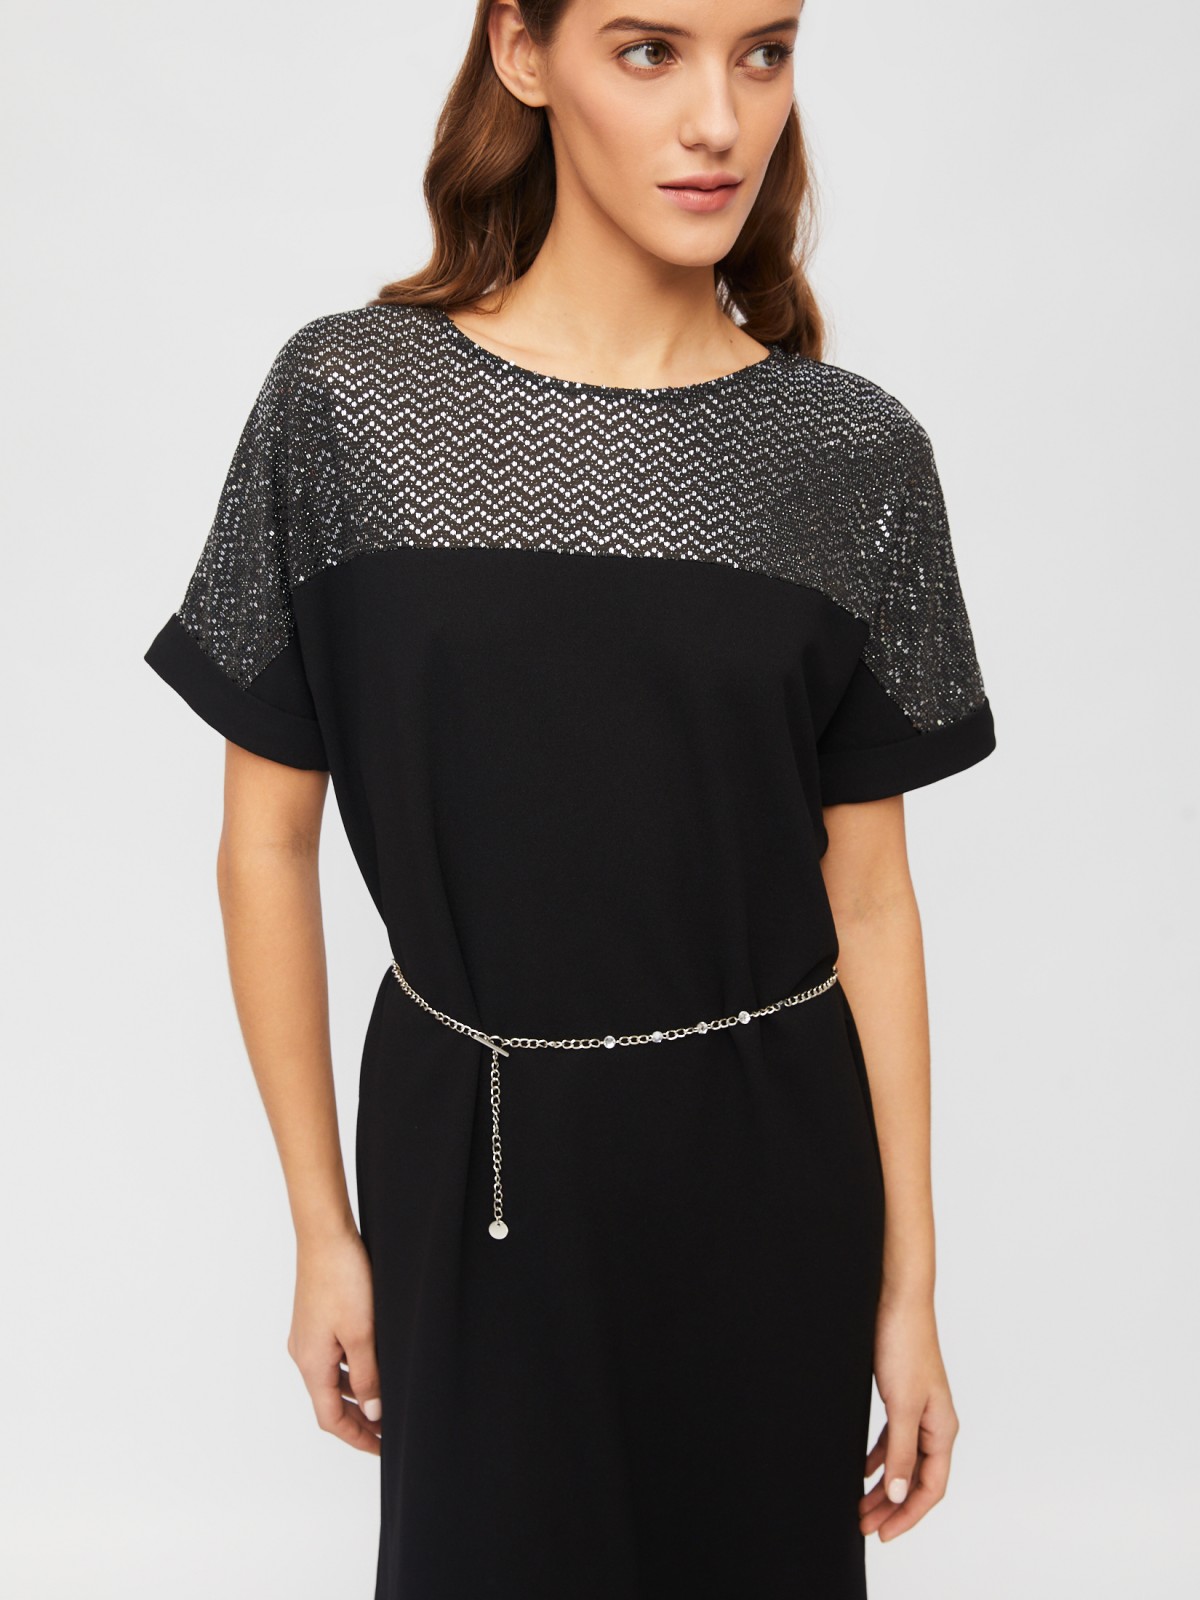 Платье мини с акцентной кокеткой и цепочкой на талии zolla 023458139113, цвет черный, размер S